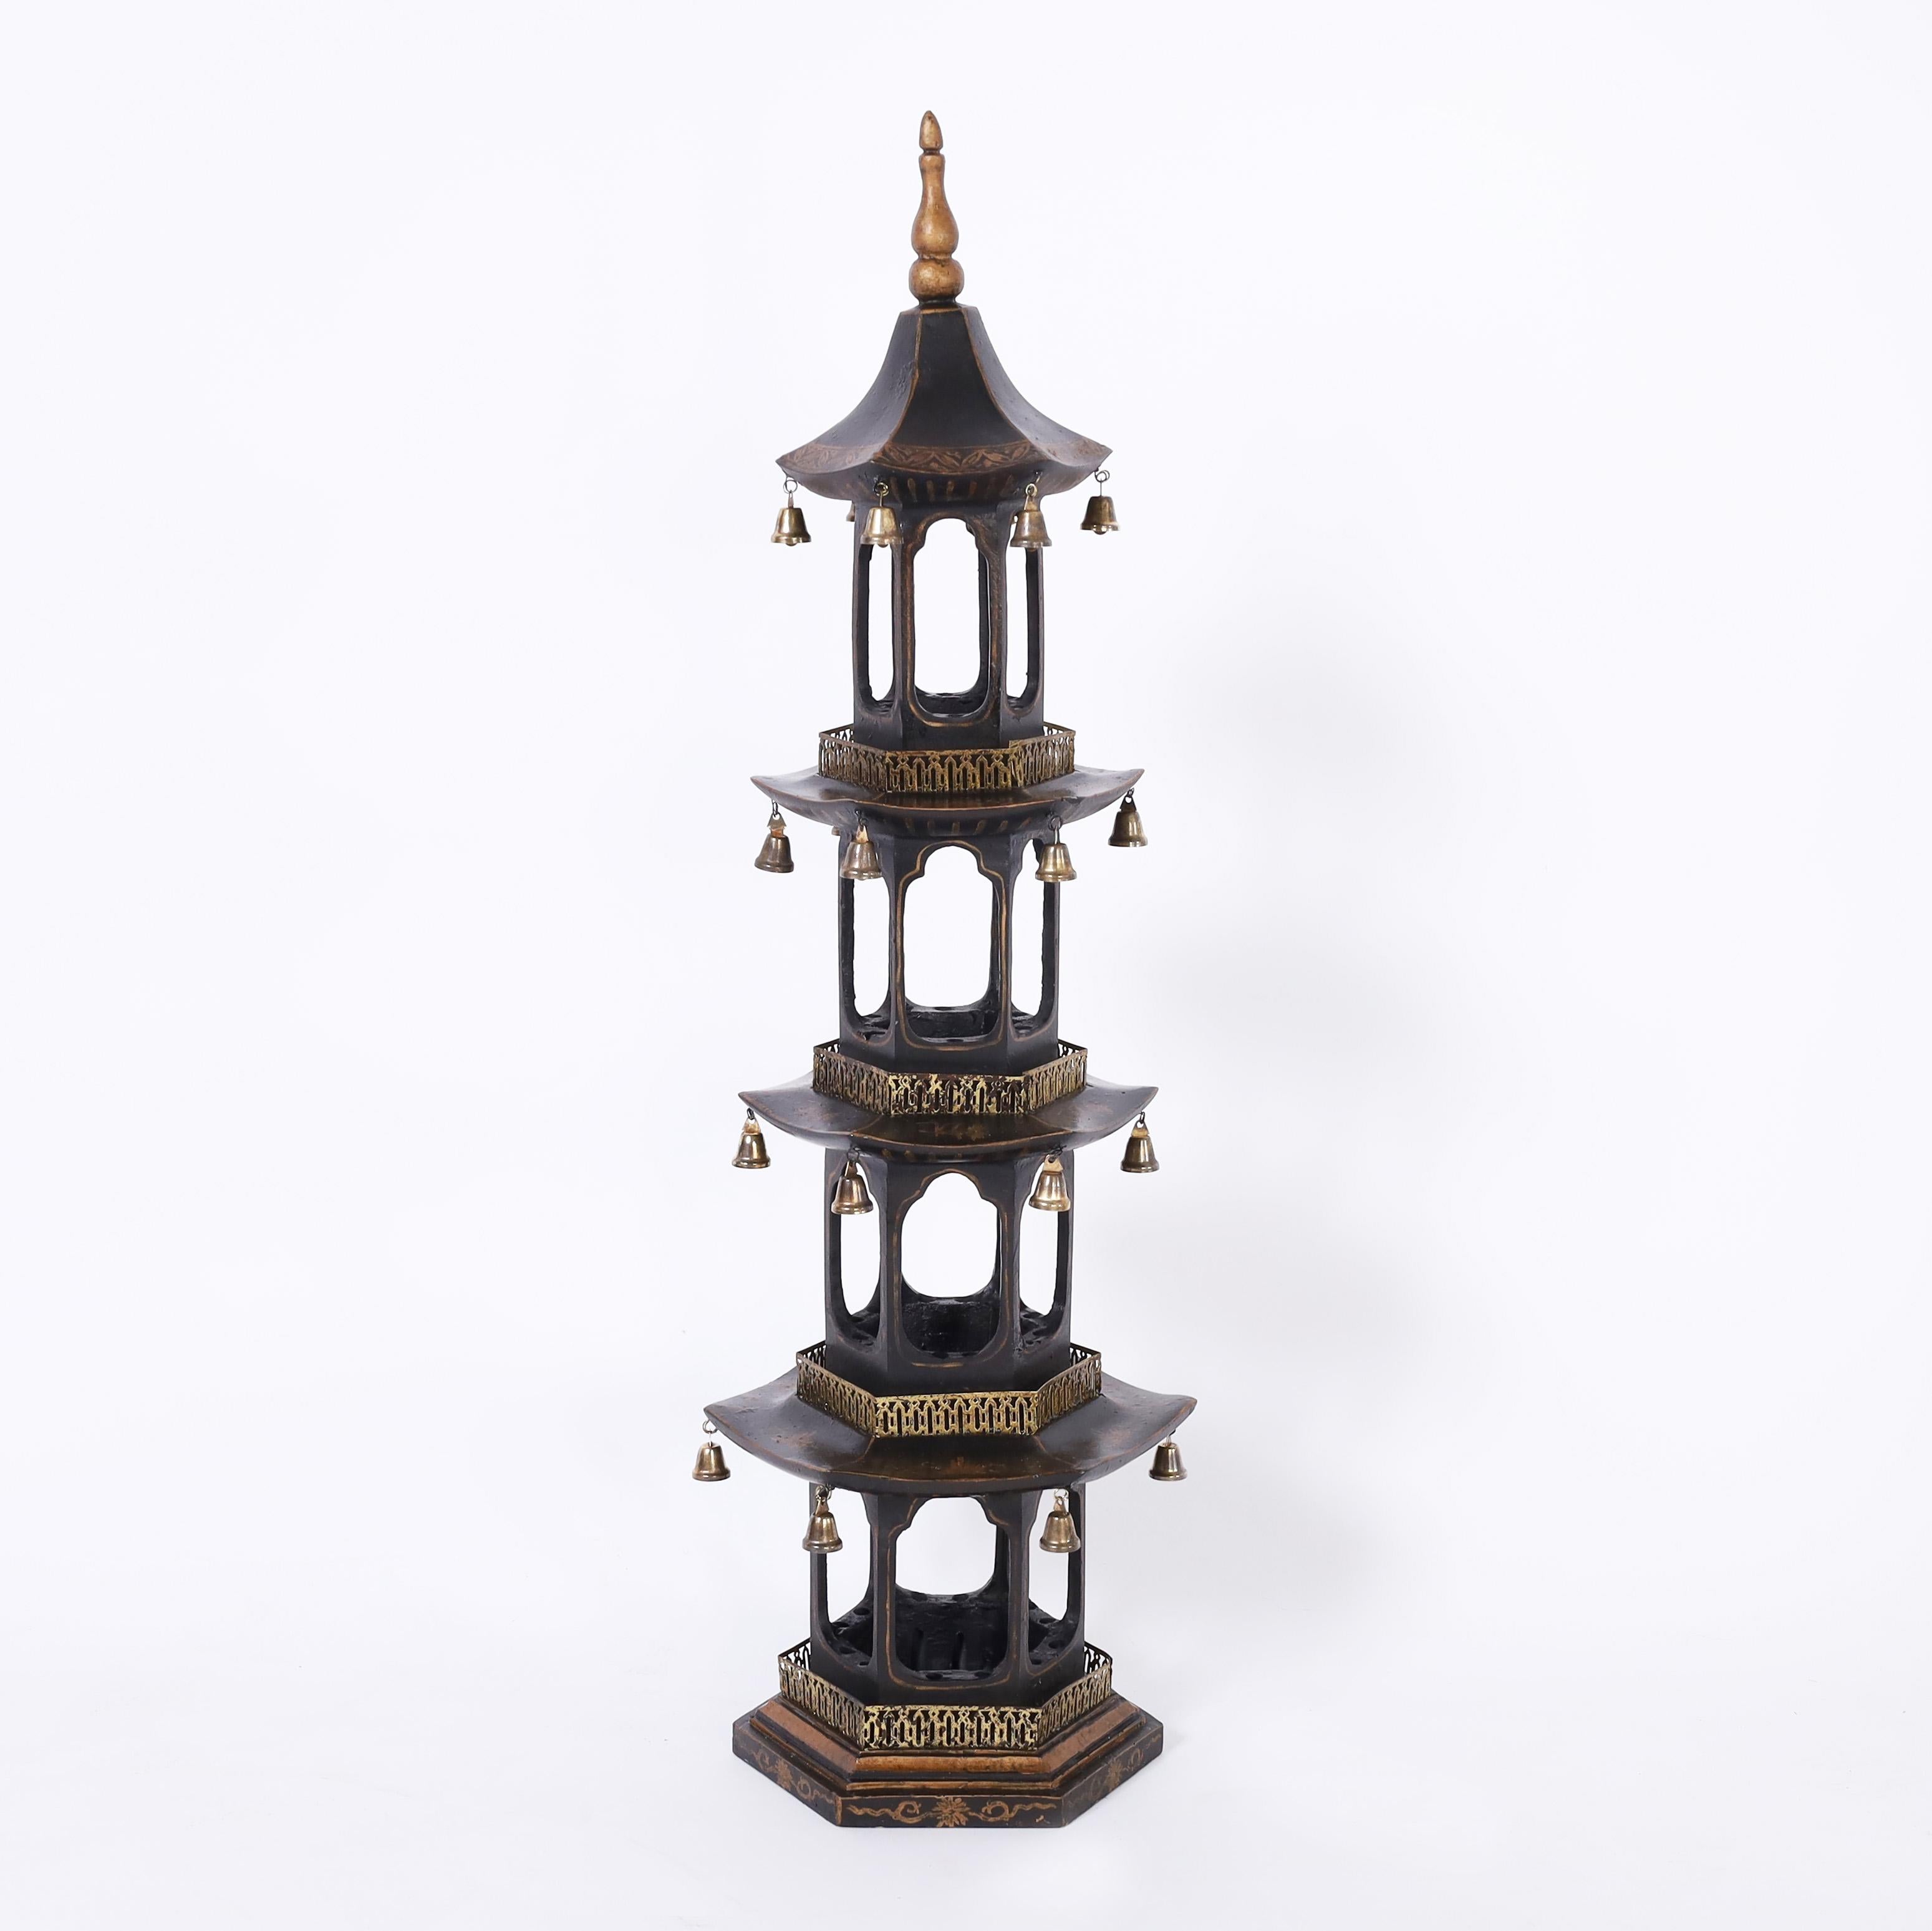 Auffälliges Paar vierstöckiger Pagodentürme aus schwarzem Lack, verziert mit goldfarbenen Blumenmustern, Messingbalkonen und Glocken.